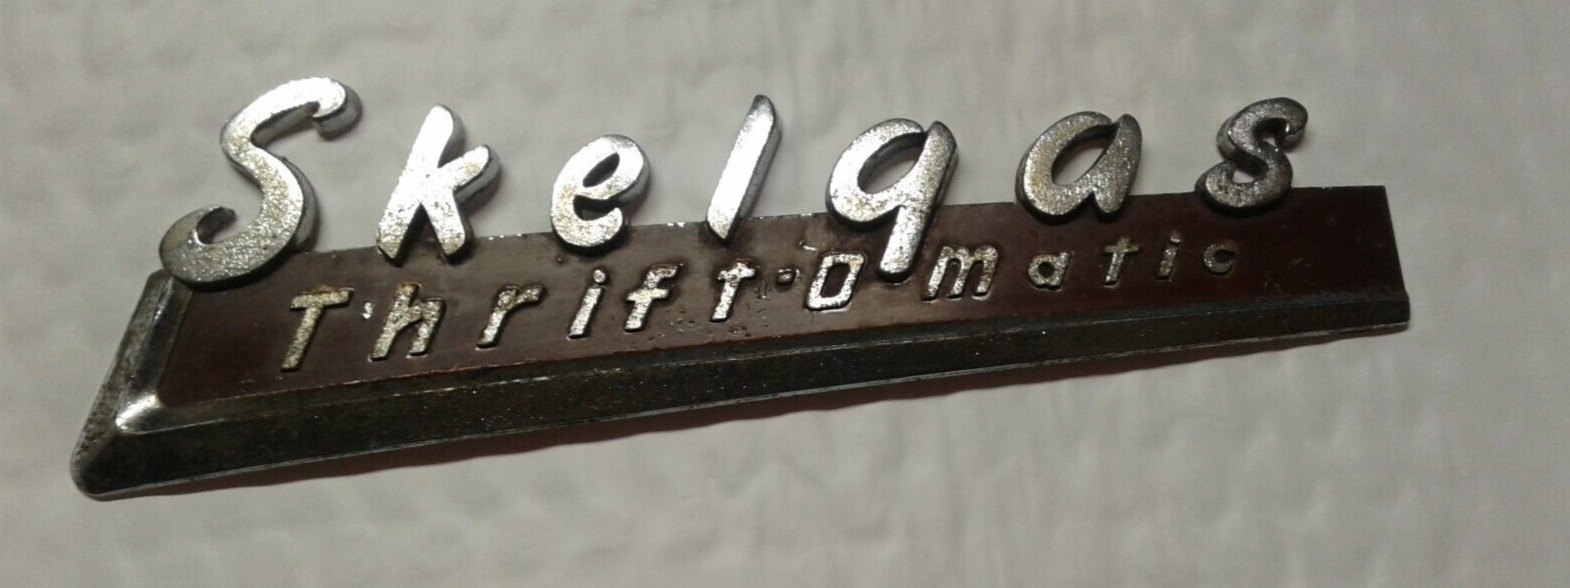 Vintage Skelgas Metal Advertising  Thrift-O-Matic